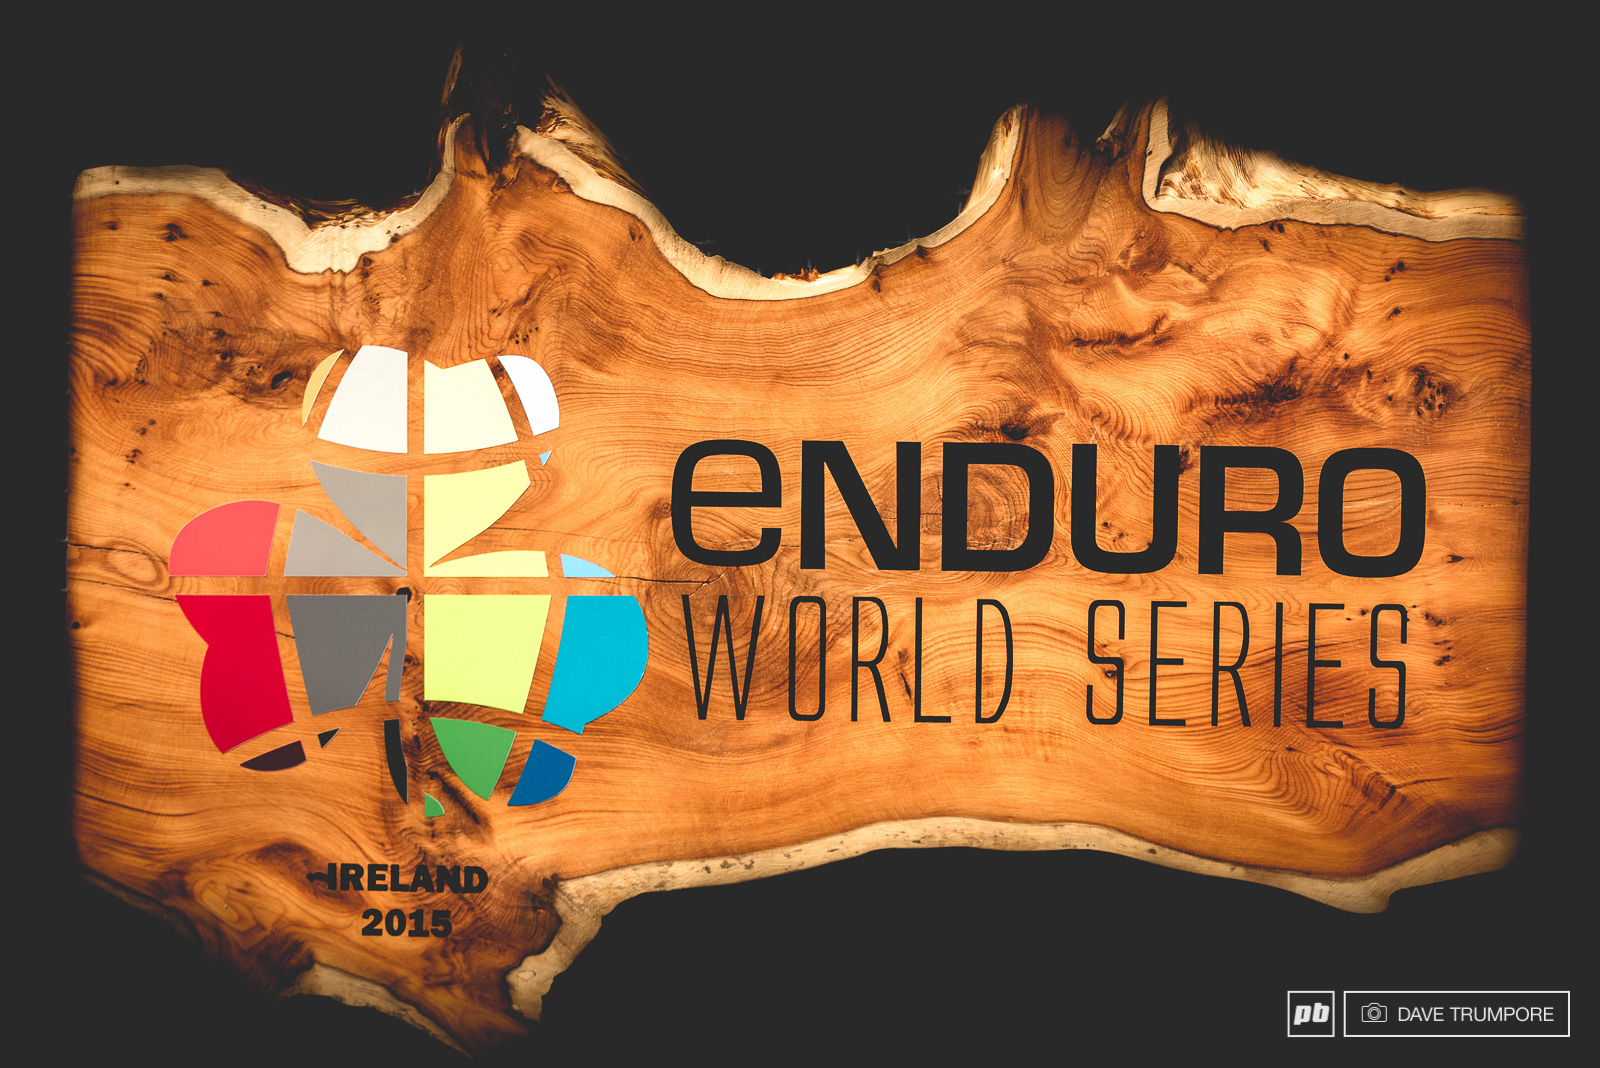 Блог компании Триал-Спорт: GT Factory Racing Team на втором этапе EWS - Emerald Enduro, Wicklow